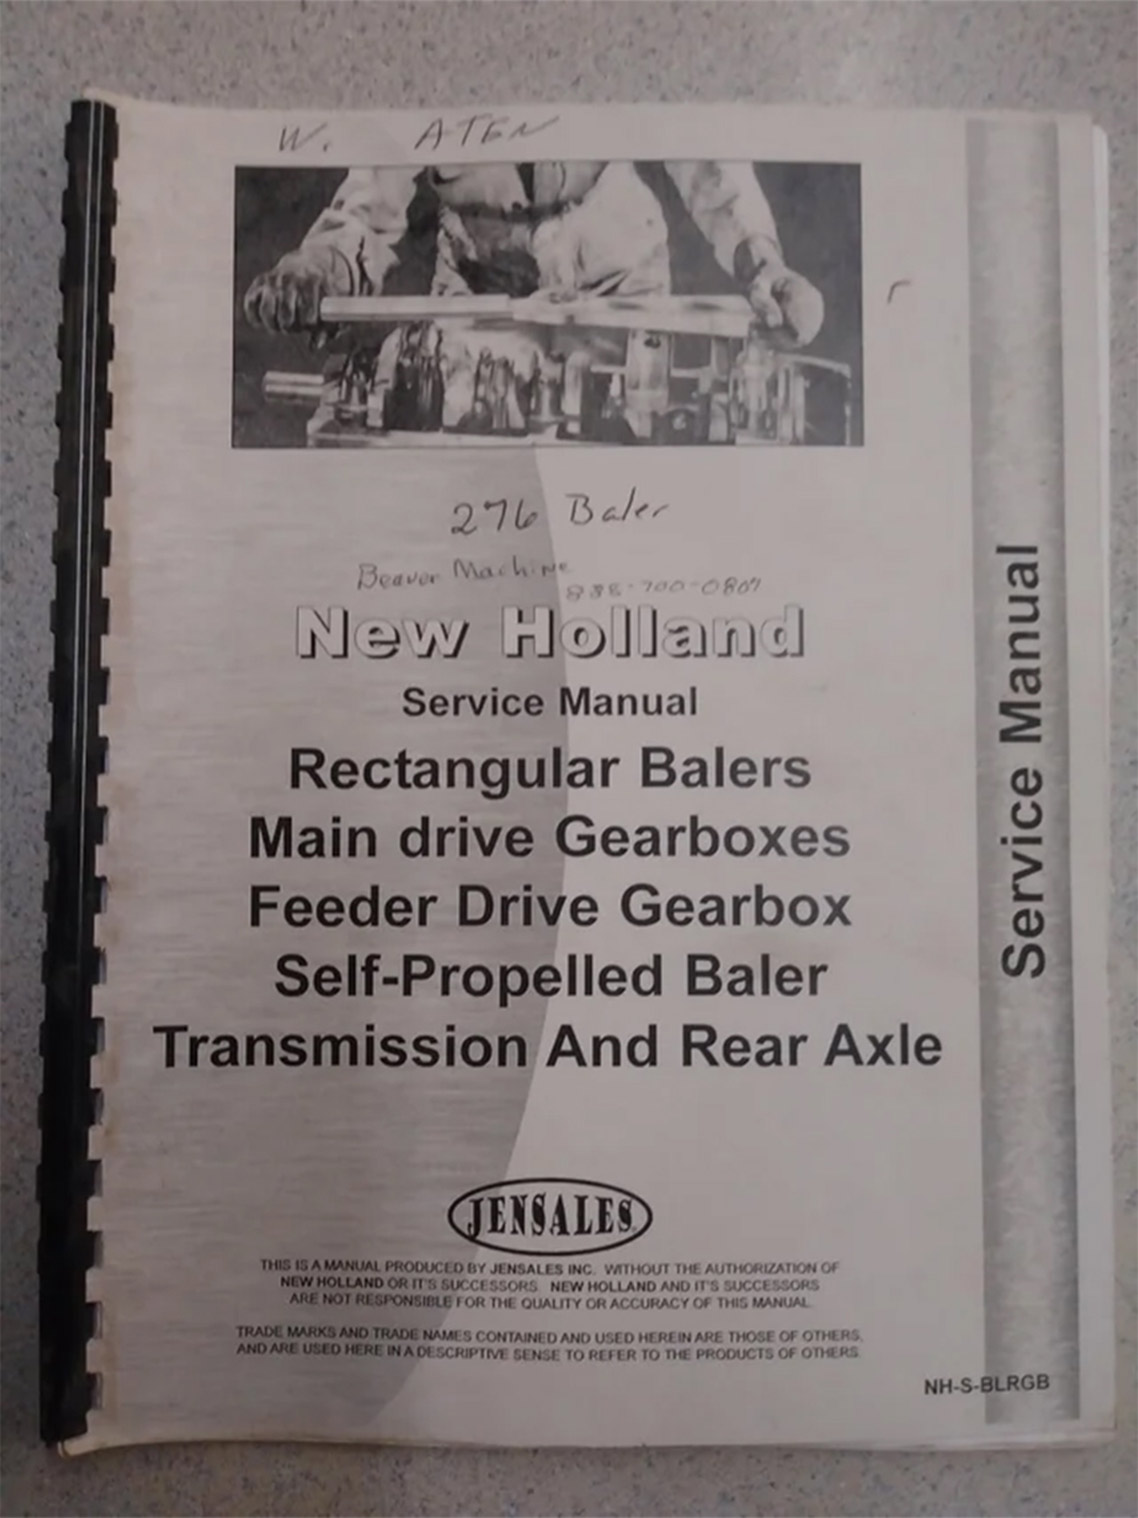 New Holland Rectangular Baler Service Manual